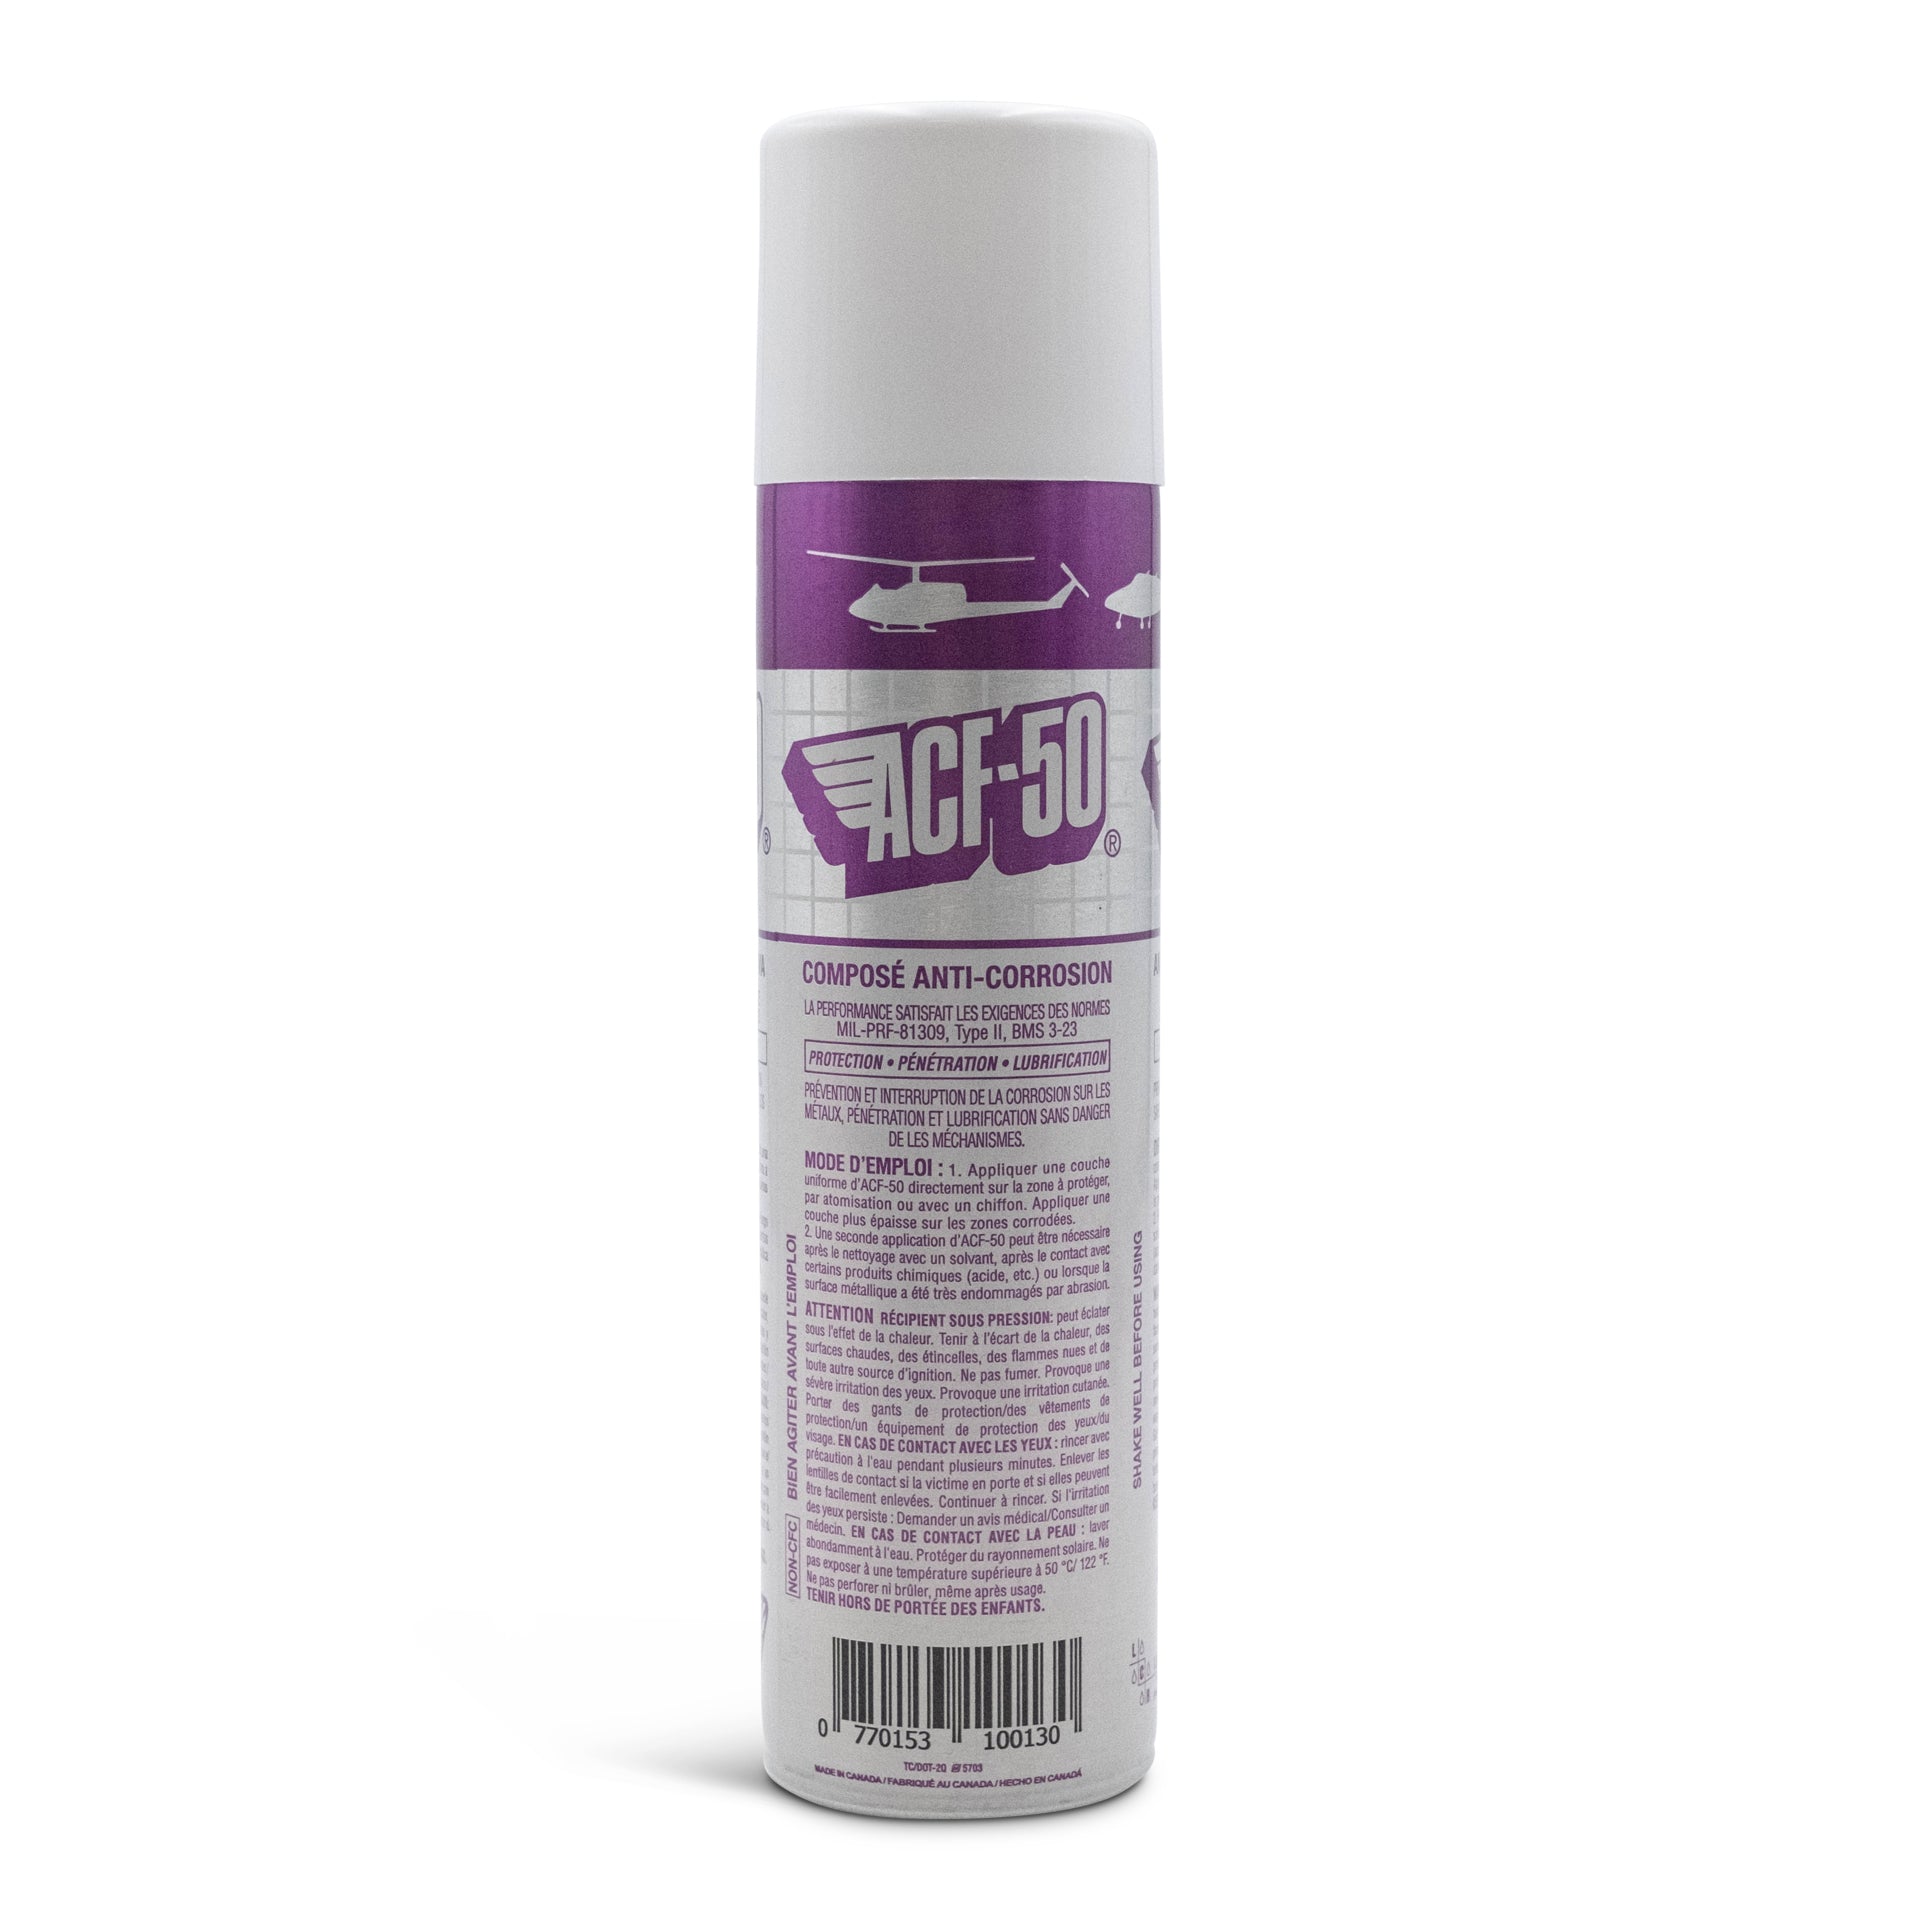 ACF50 Anti-Corrosion Formula Spray 12043000